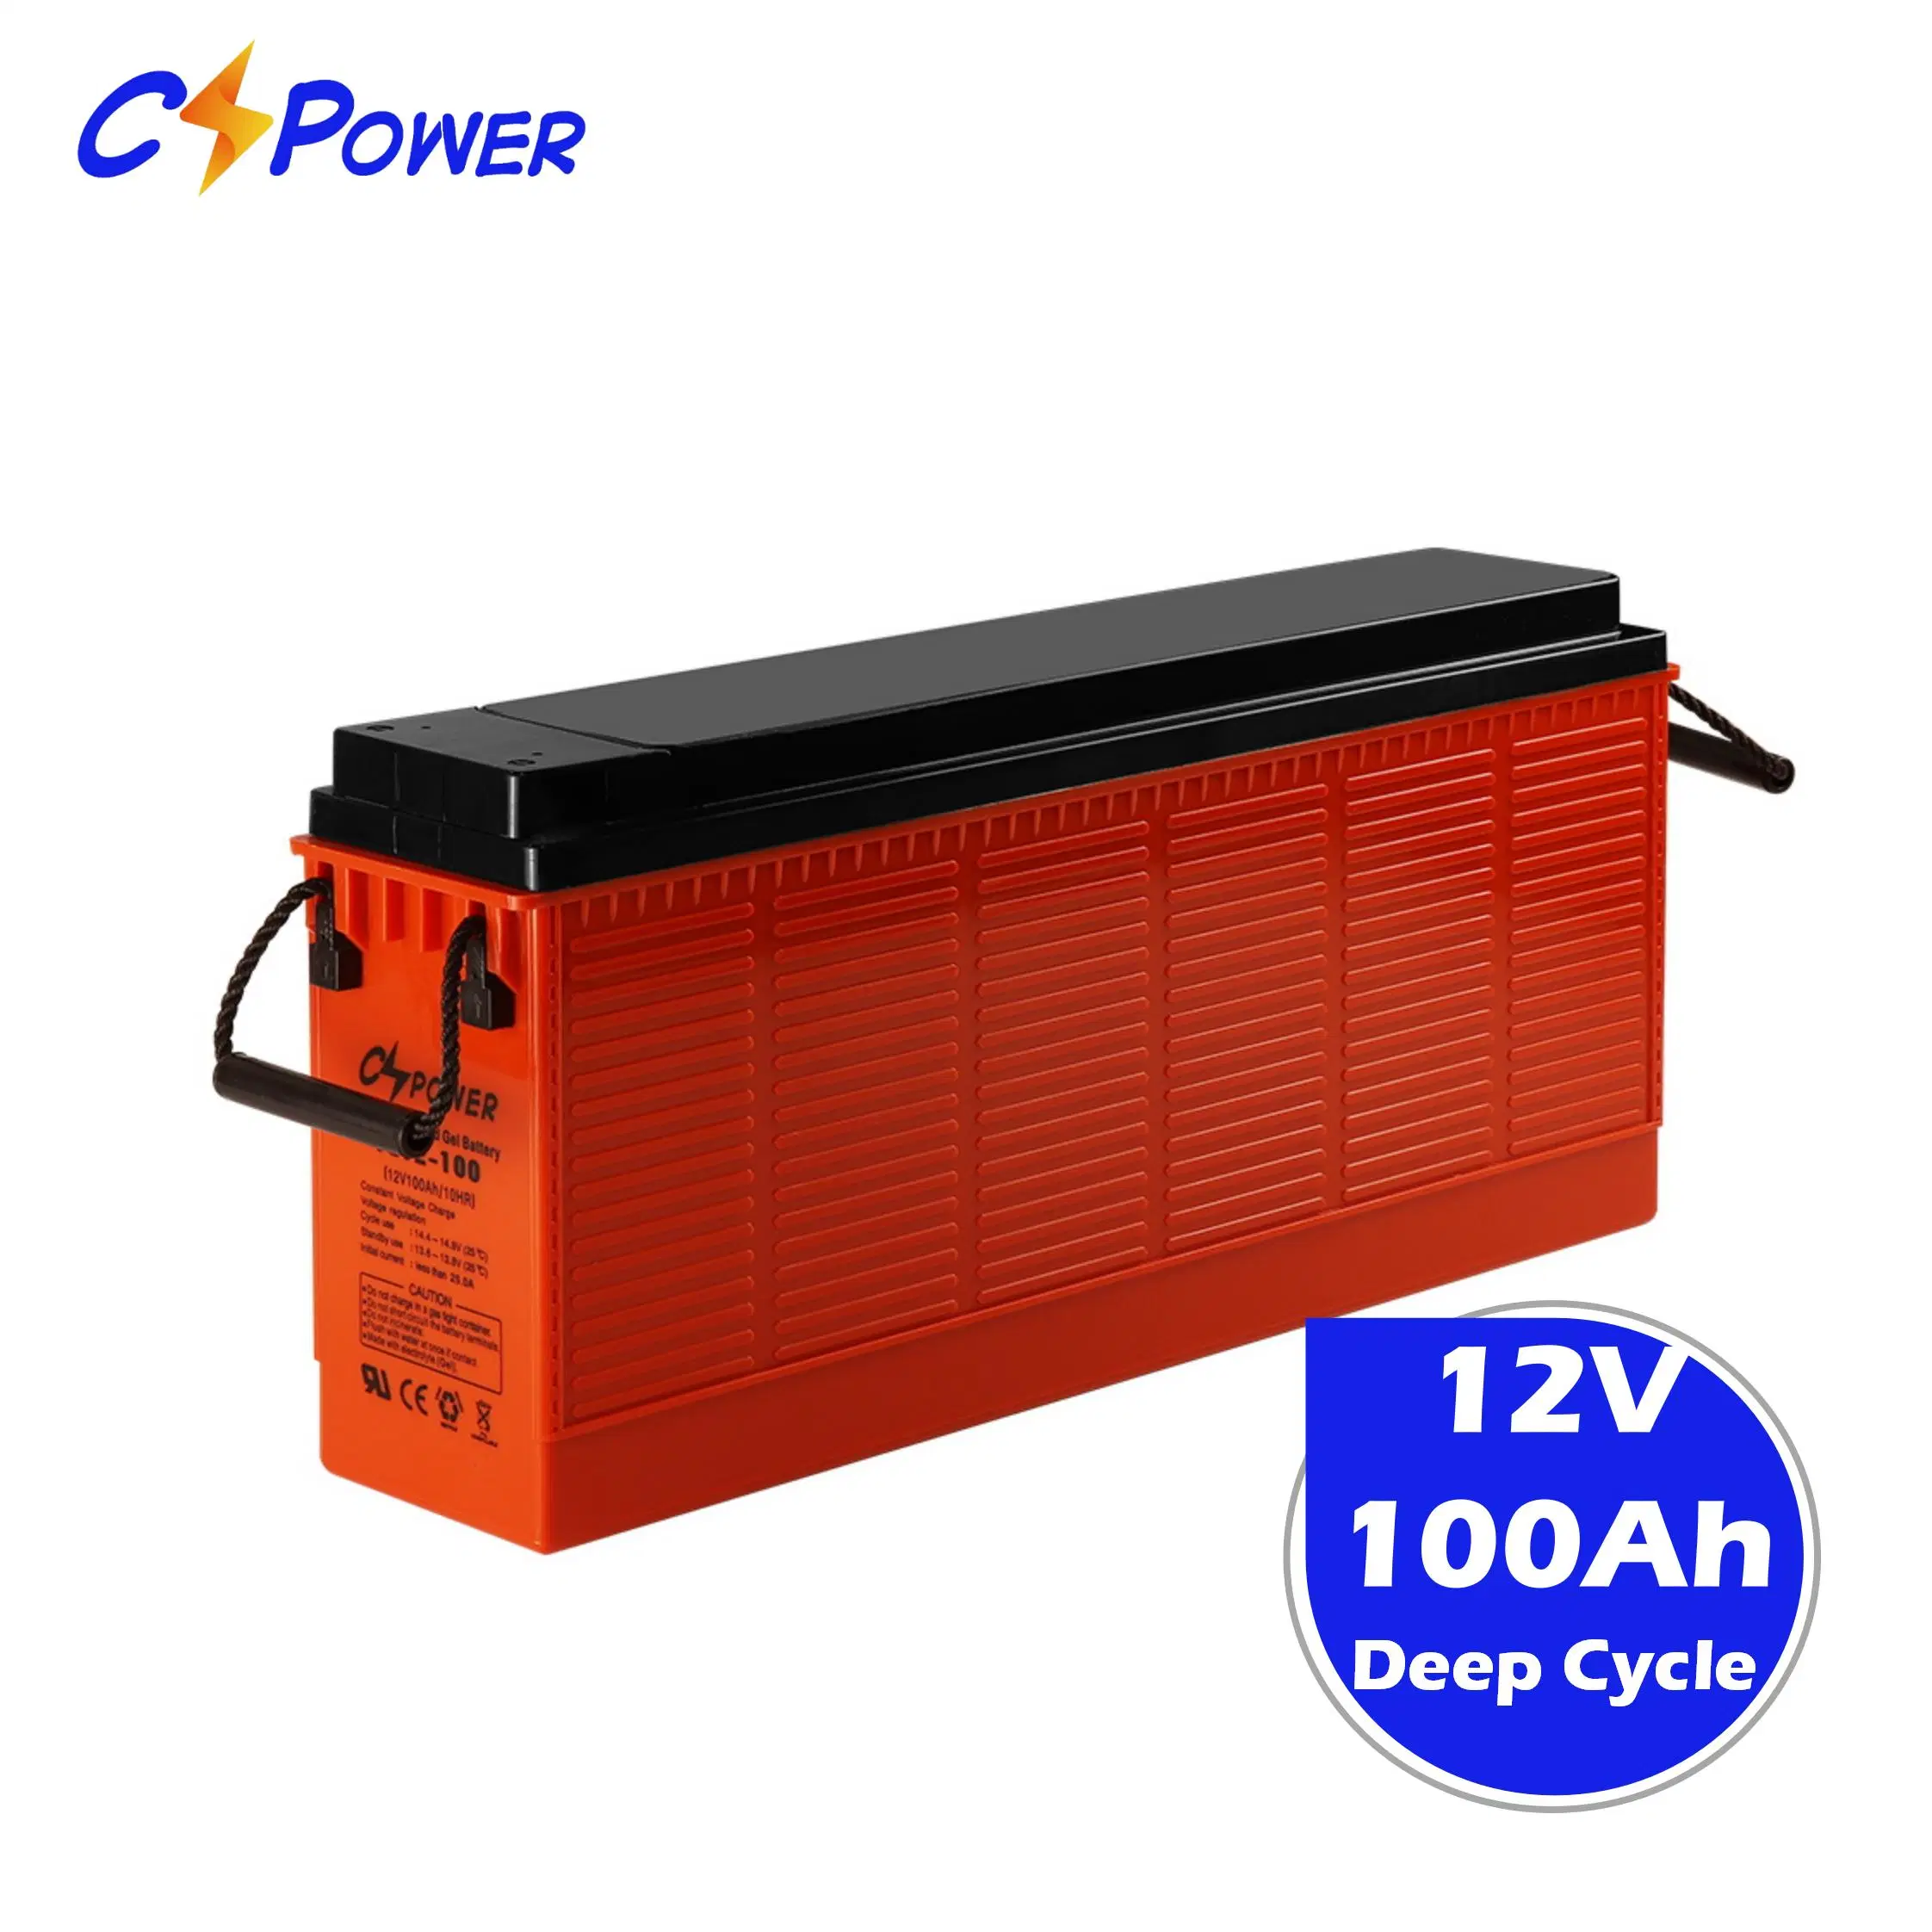 Cspower Batterie à bornes avant Batterie au gel rechargeable Batterie mince FL12-100ah/12V-100ah-Batterie/Batterie de télécommunication/Batterie d'onduleur/Batterie solaire 12V/Csi